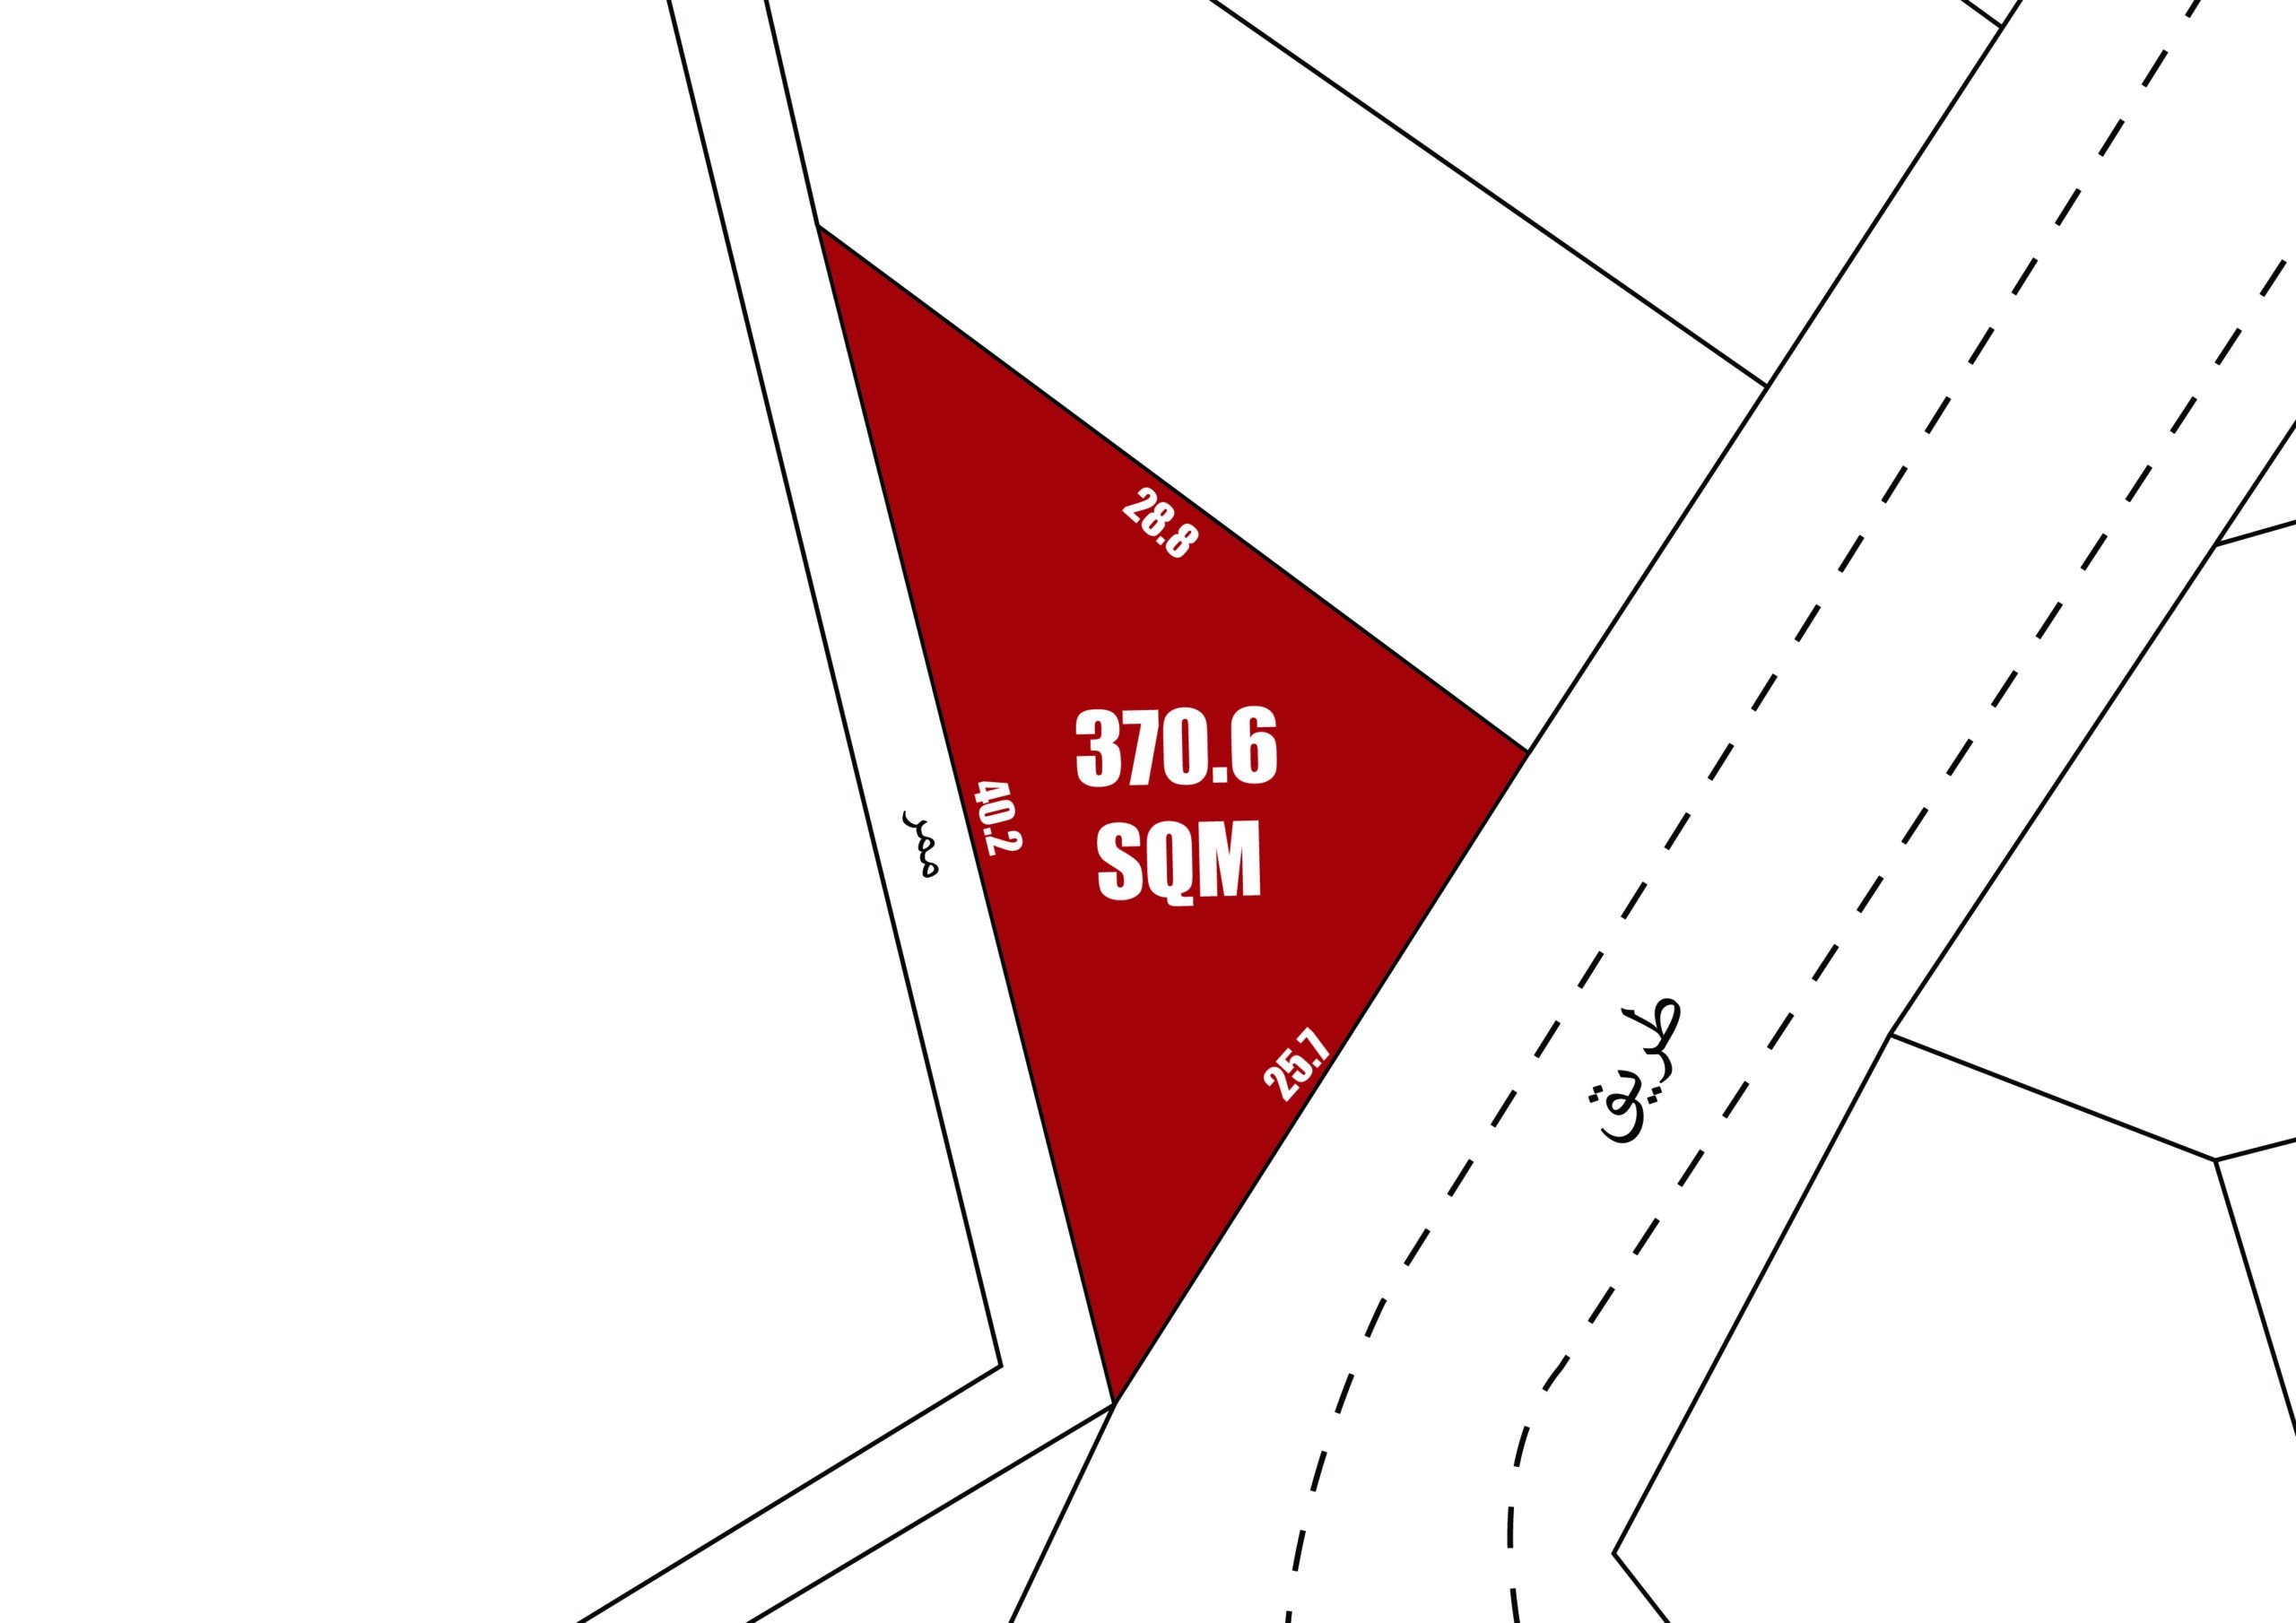 رسم تخطيطي يوضح قطعة أرض مثلثة حمراء اللون بمساحة "370.6 متر مربع" مع القياسات المحيطة بها، ضمن مخطط الشارع.